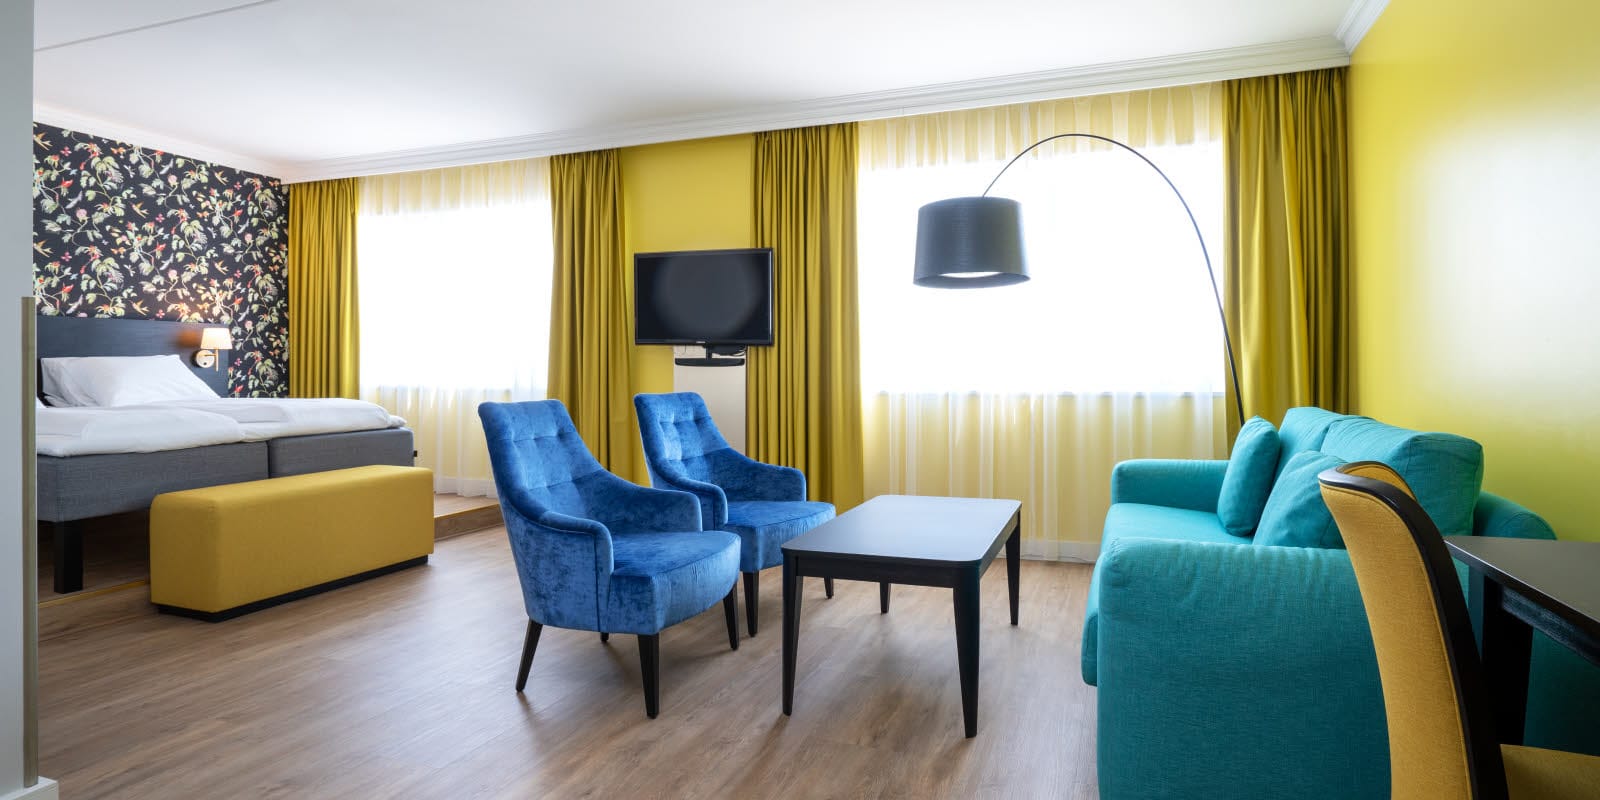 Dobbeltseng, mønstret tapet, tv, to lenestoler og sittegruppe i buisness room på Thon Hotel Triaden i Lørenskog